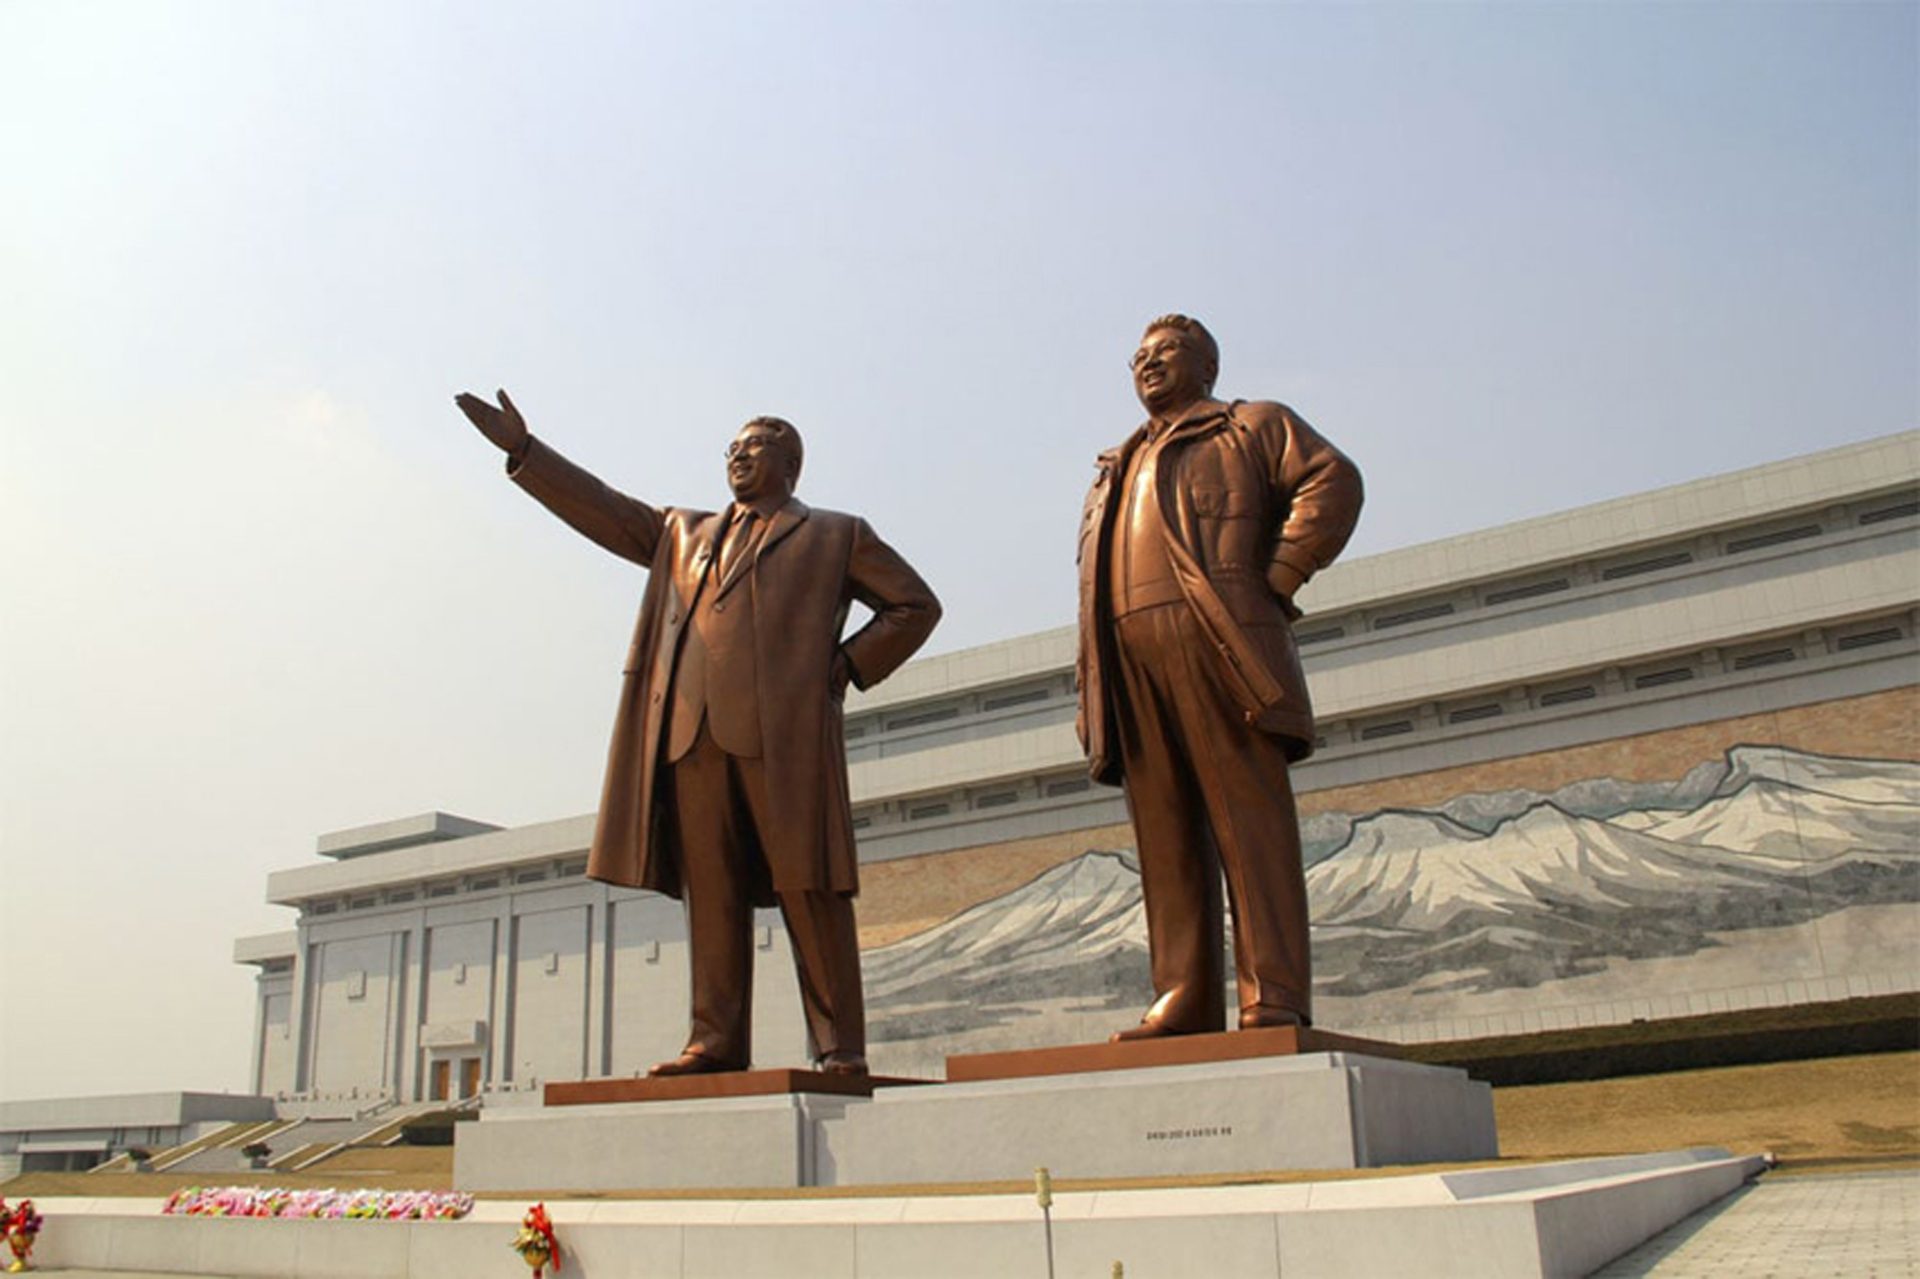 Estatuas de los líderes norcoreanos,una de las atracciones monumentales de Pyongyang. Foto cedida por Destinia